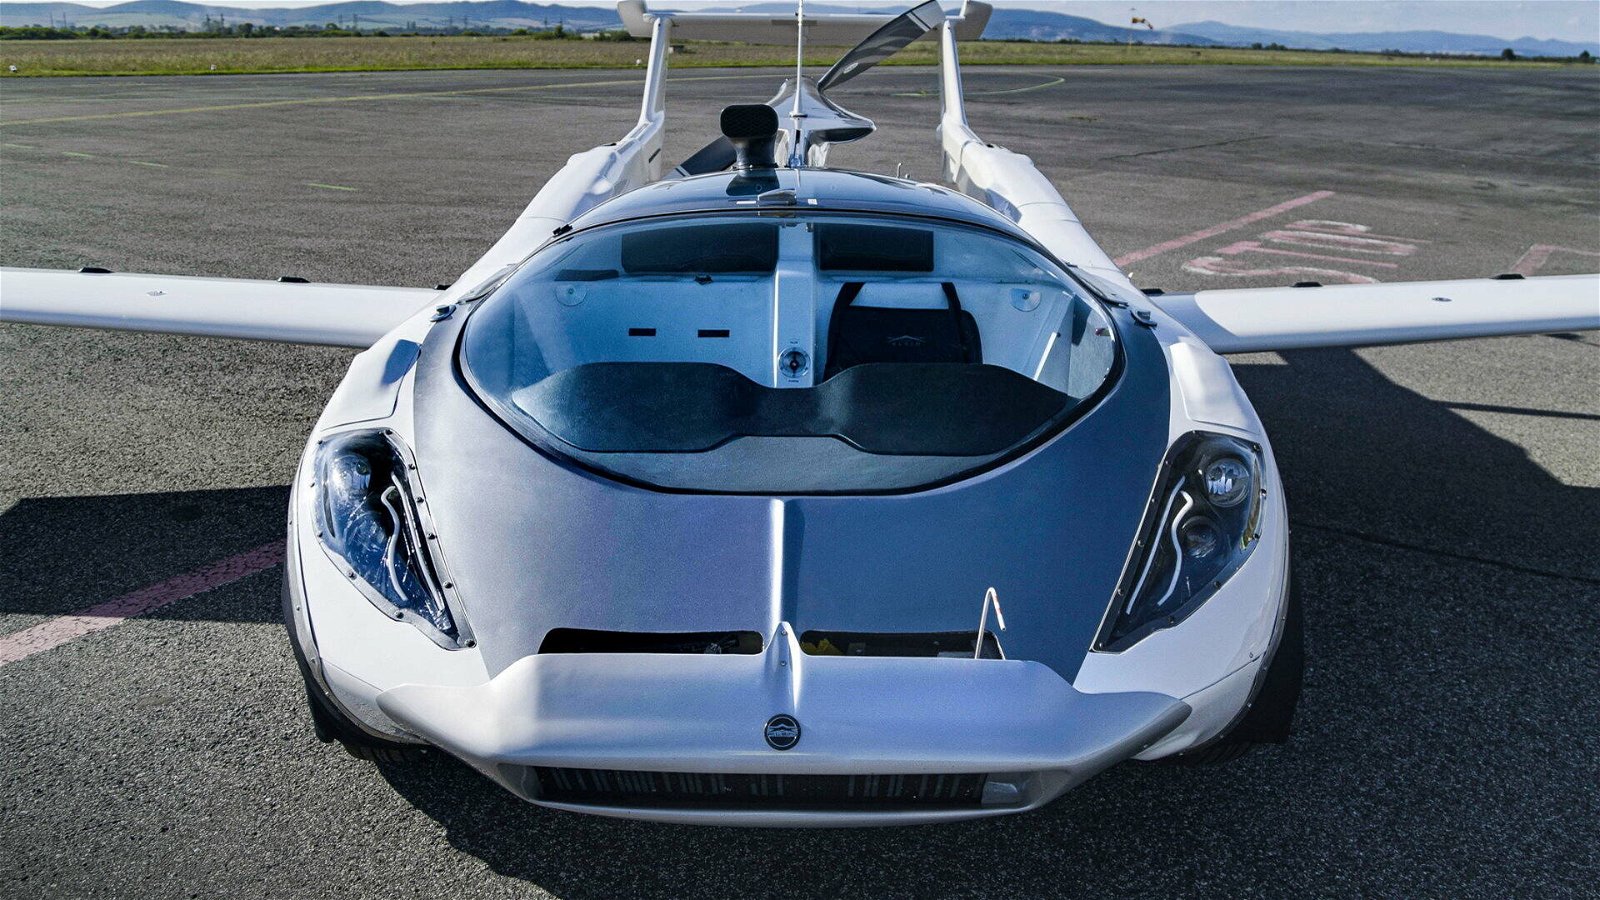 Immagine di Klein Vision AirCar, l'auto volante in stile Transformers